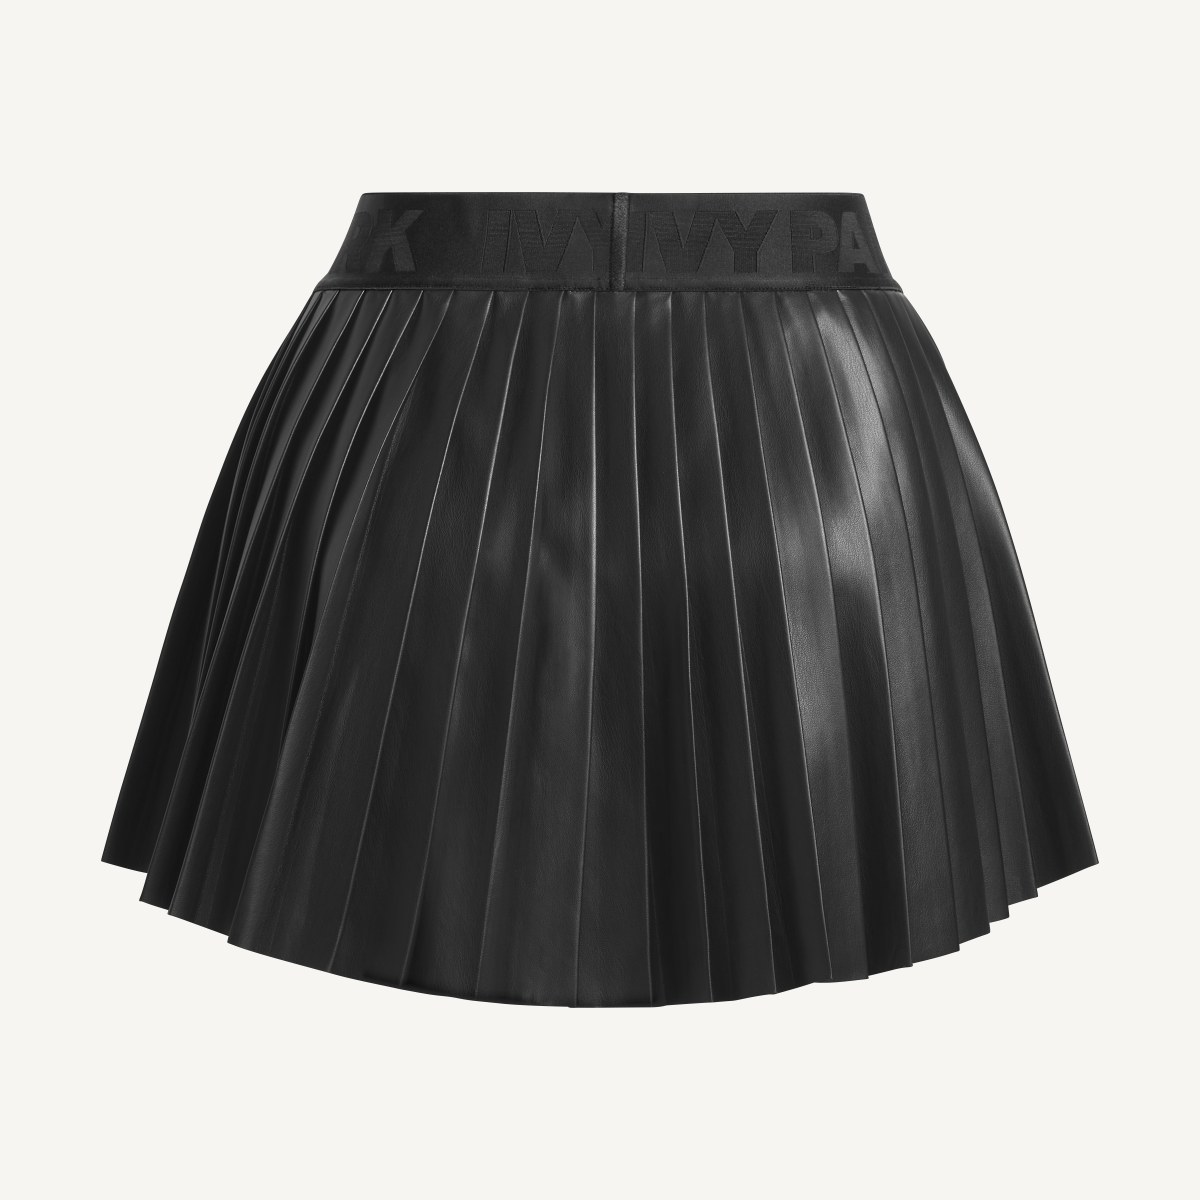 Adidas Leather Pleated Mini Skirt (Plus Size). 5